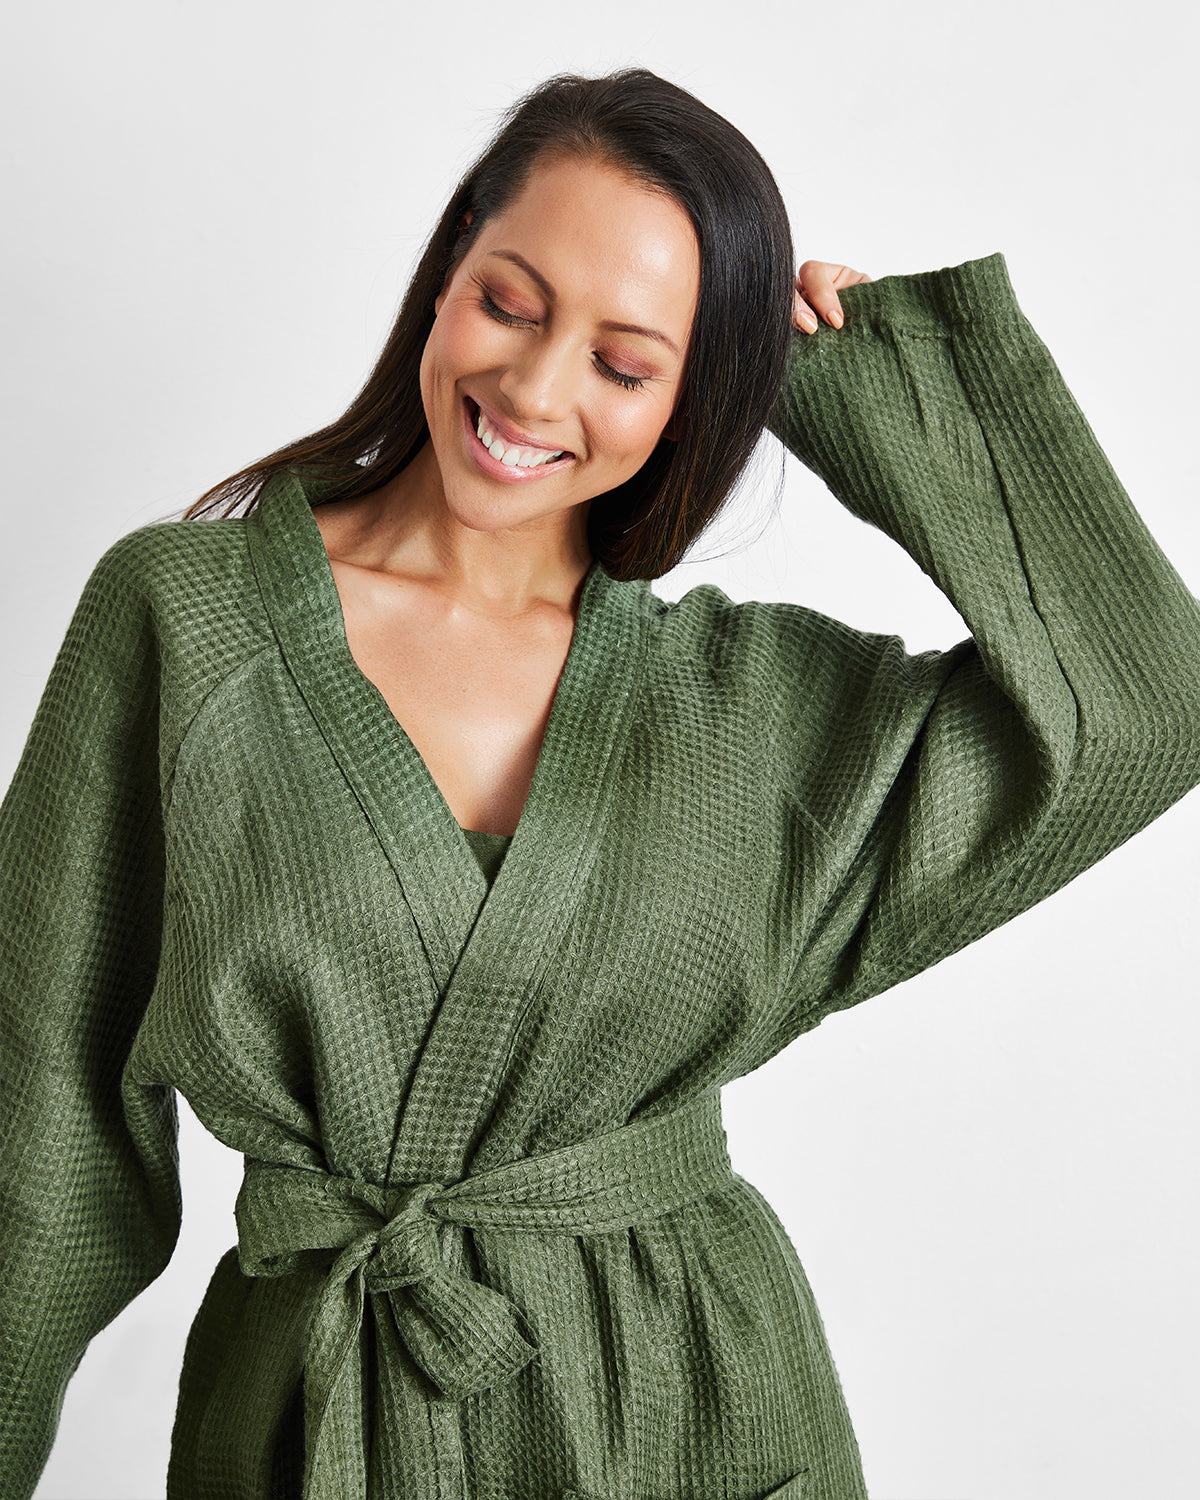 Green Linen Bathrobe, Gift for Her Dark Green Linen Bath Robe, Natural  Linen Kimono Bathrobe for Women - Etsy